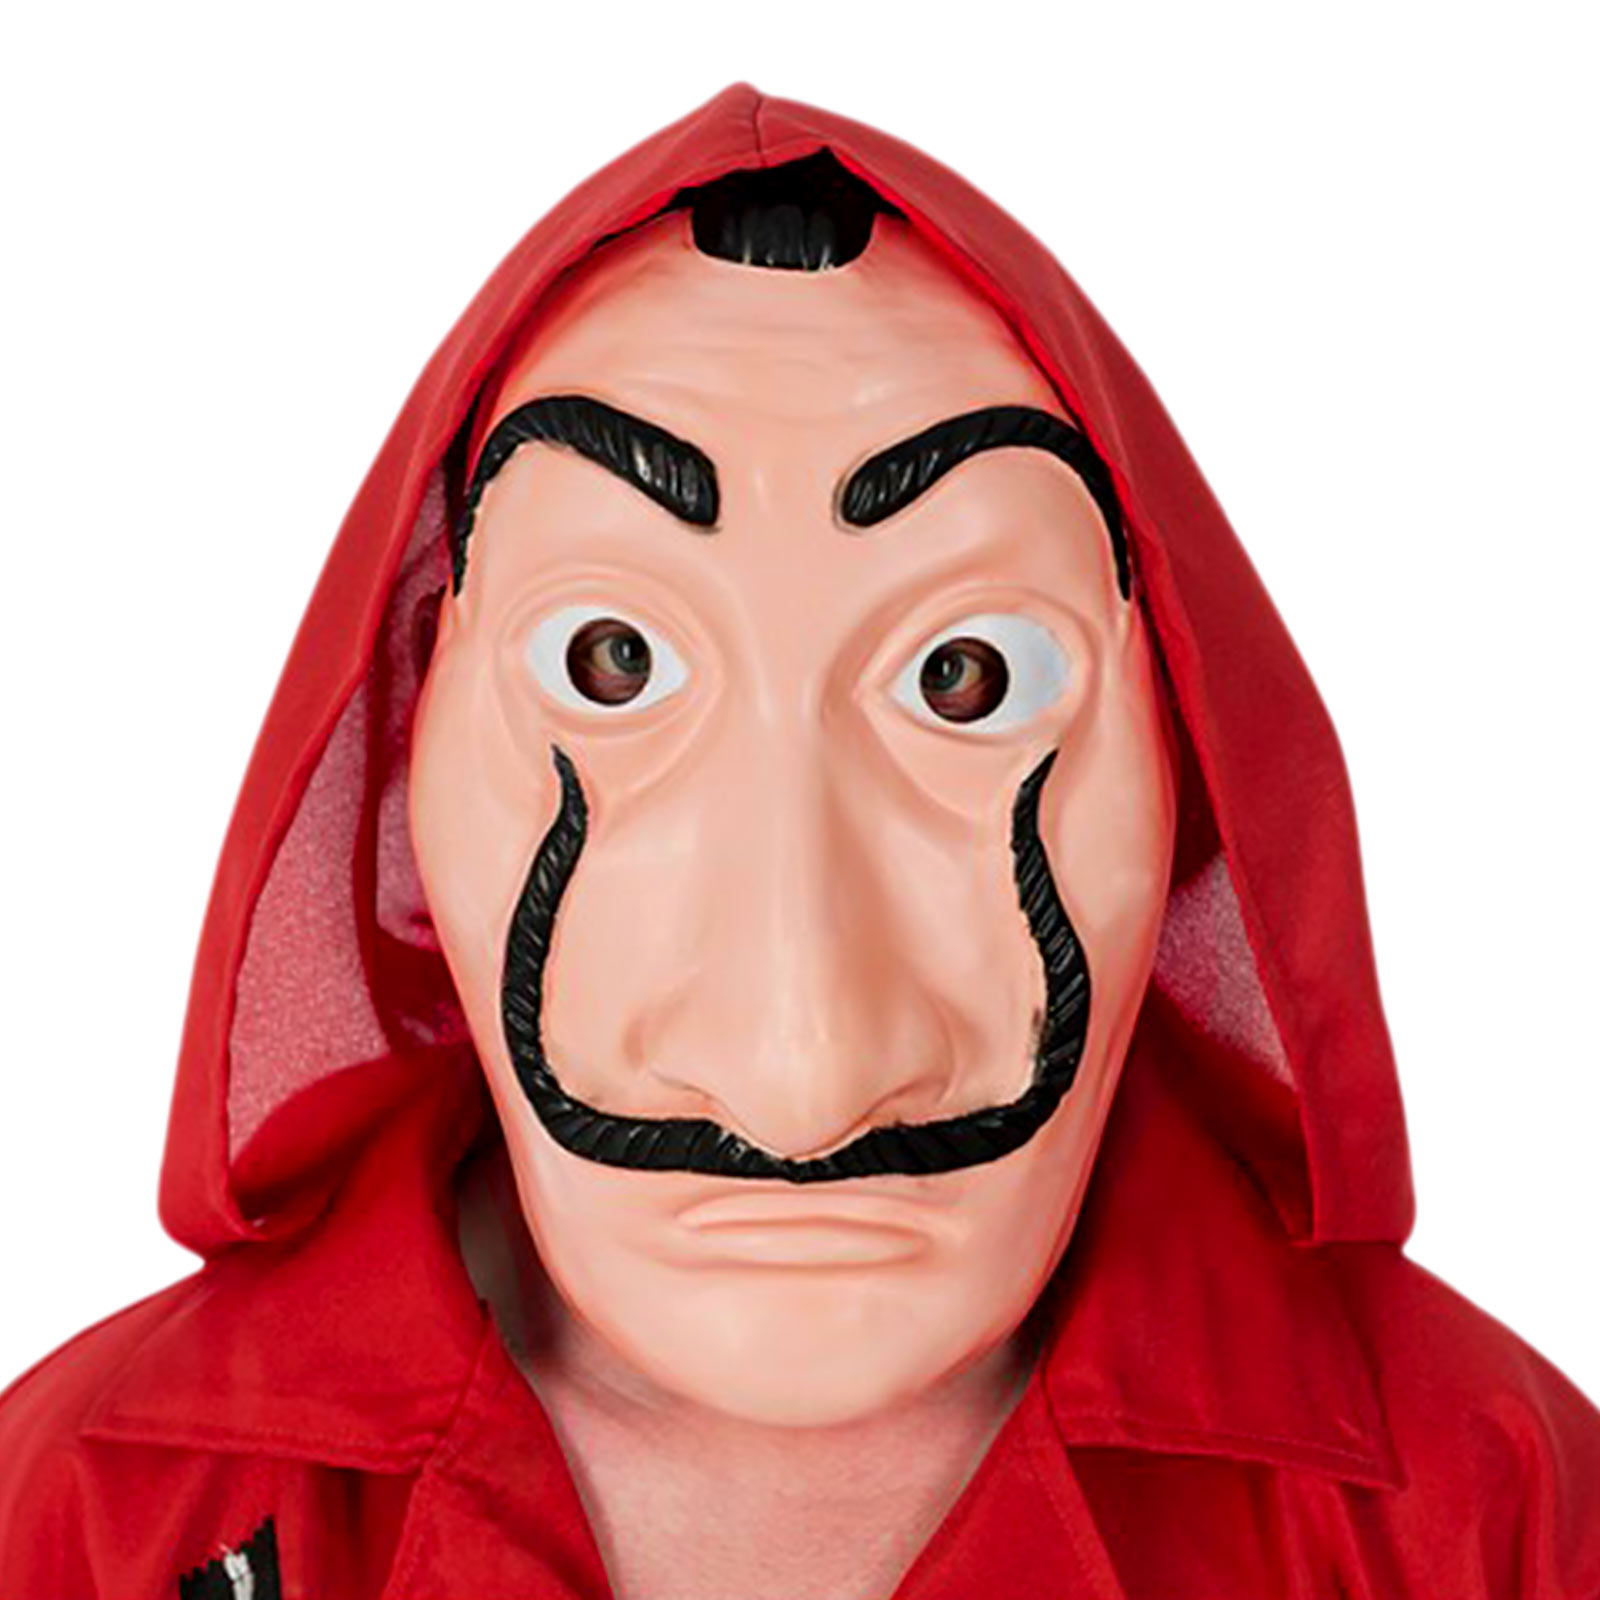 Demi-masque de costume Salvador pour les fans de La Casa de Papel